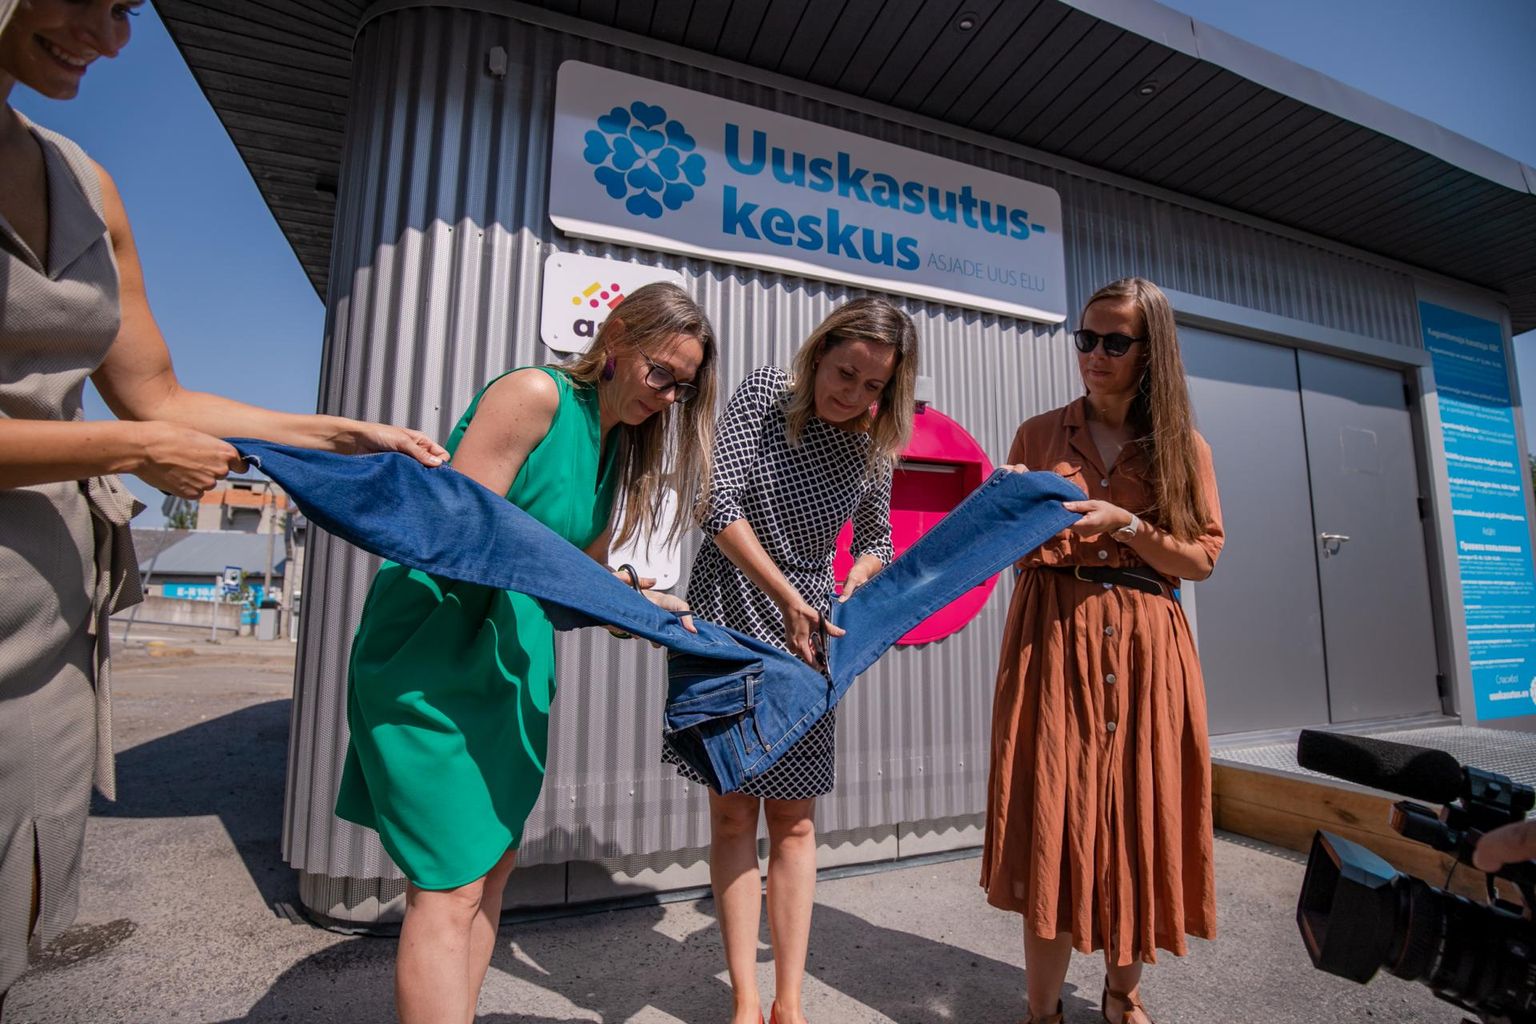 Käärid haarasid uuskasutuskeskuse tegevjuht Diana Paakspuu ja Pärnu Keskuse tegevjuht Margit Juhansoo.